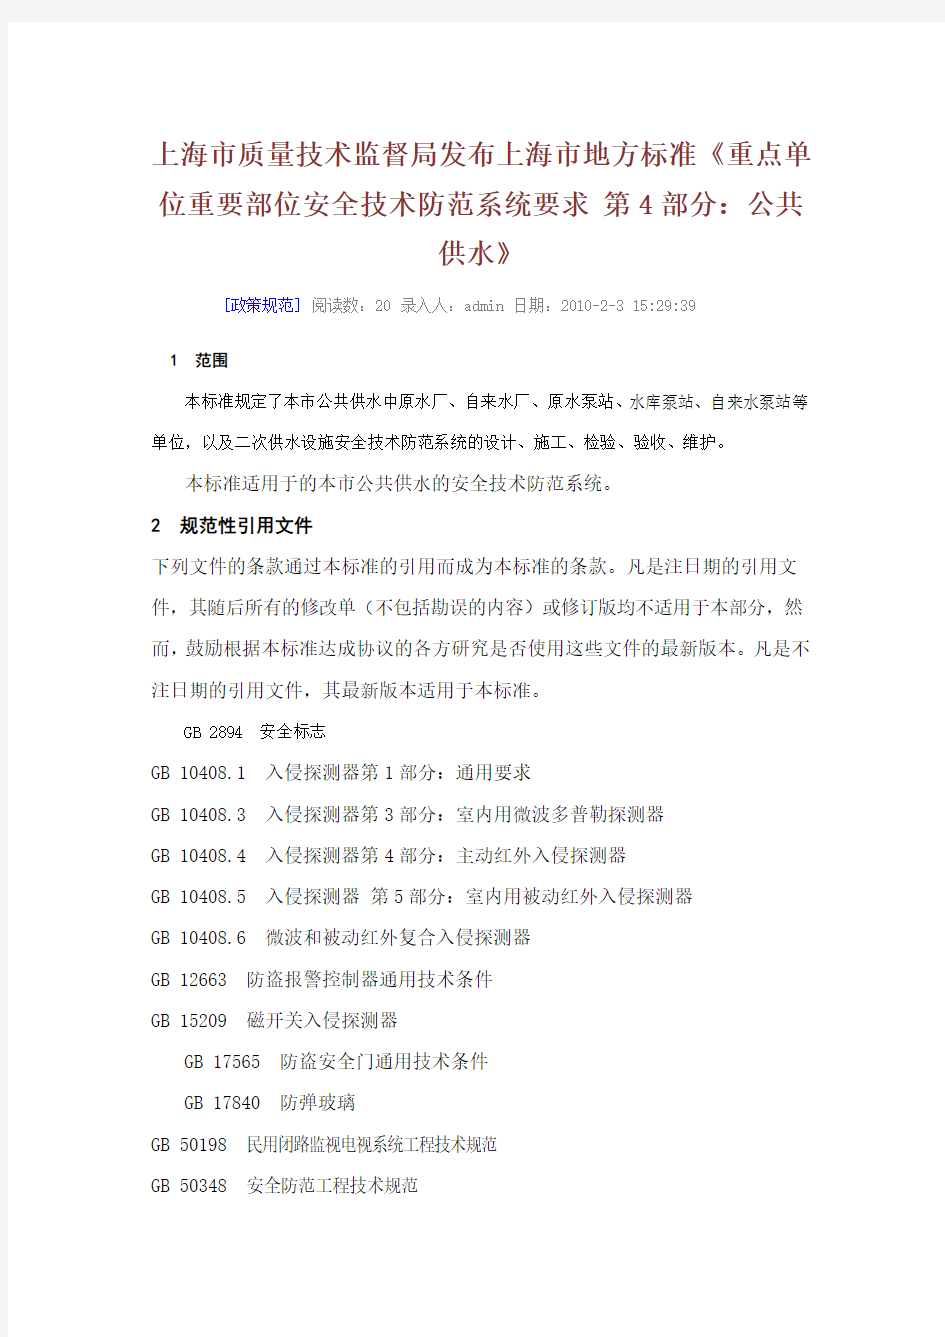 (技术规范标准)上海市质量技术监督局发布上海市地方标准重点单位重要部位安全技术